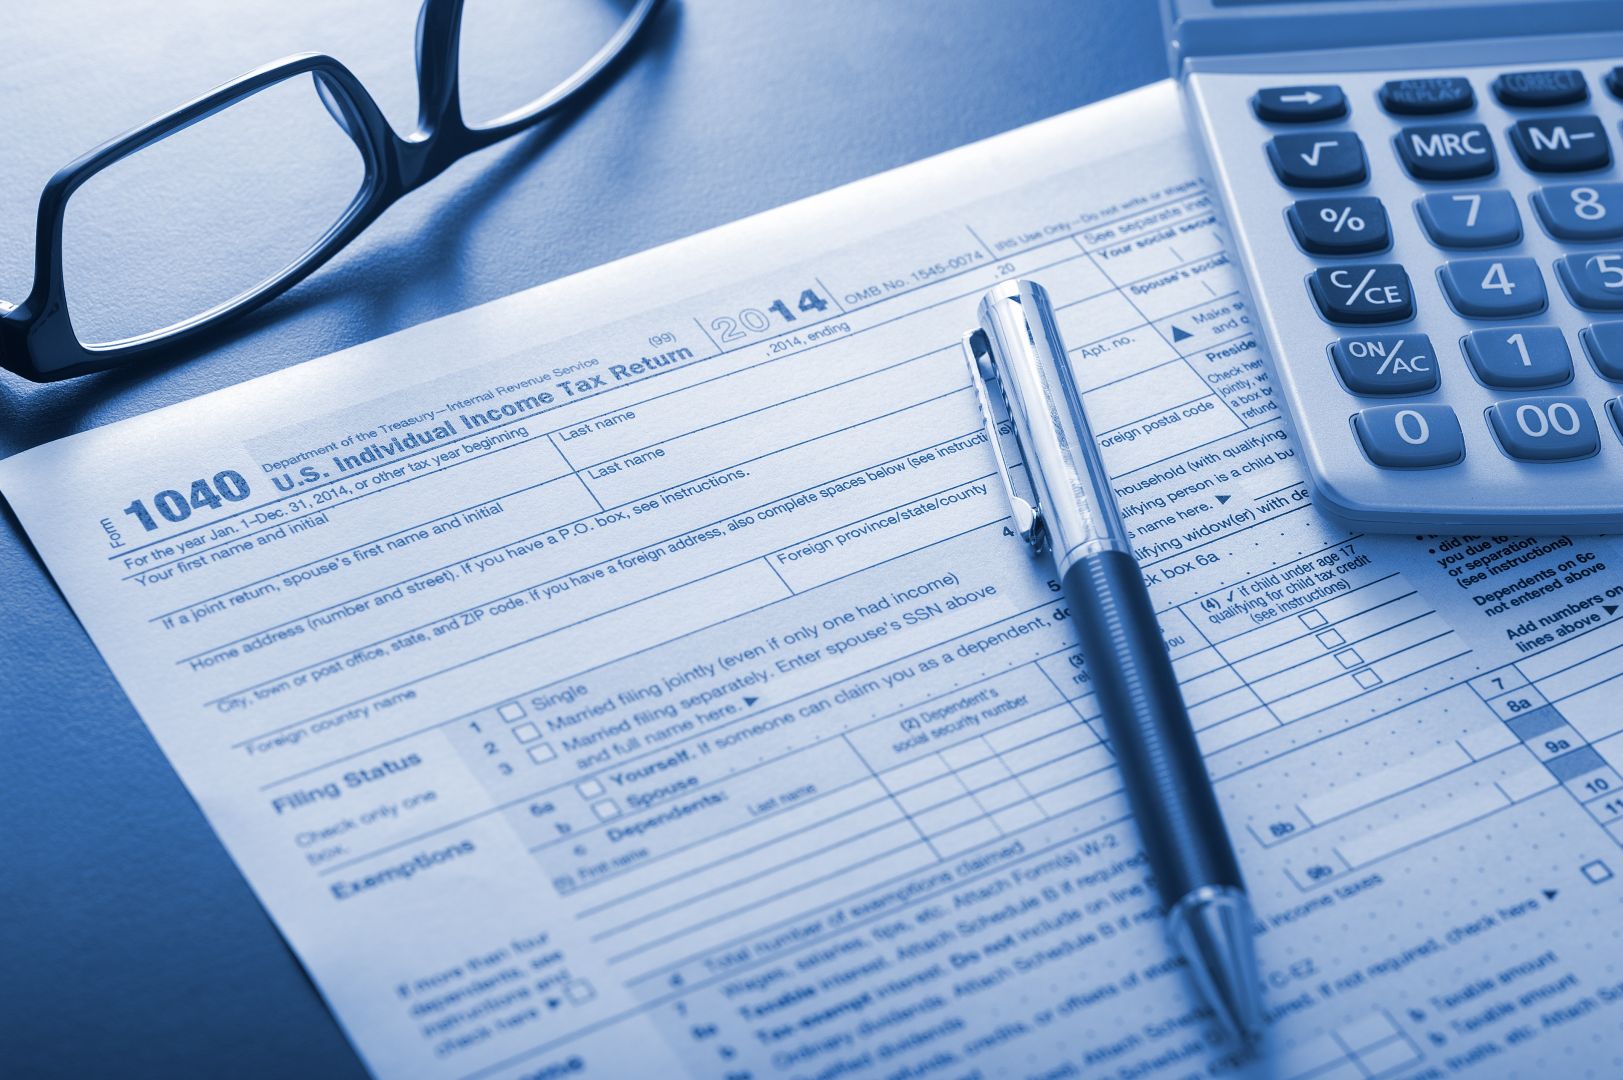 Poptávka na účetní, daňová evidence a právní poradenství (Účetní služby) - Břeclav